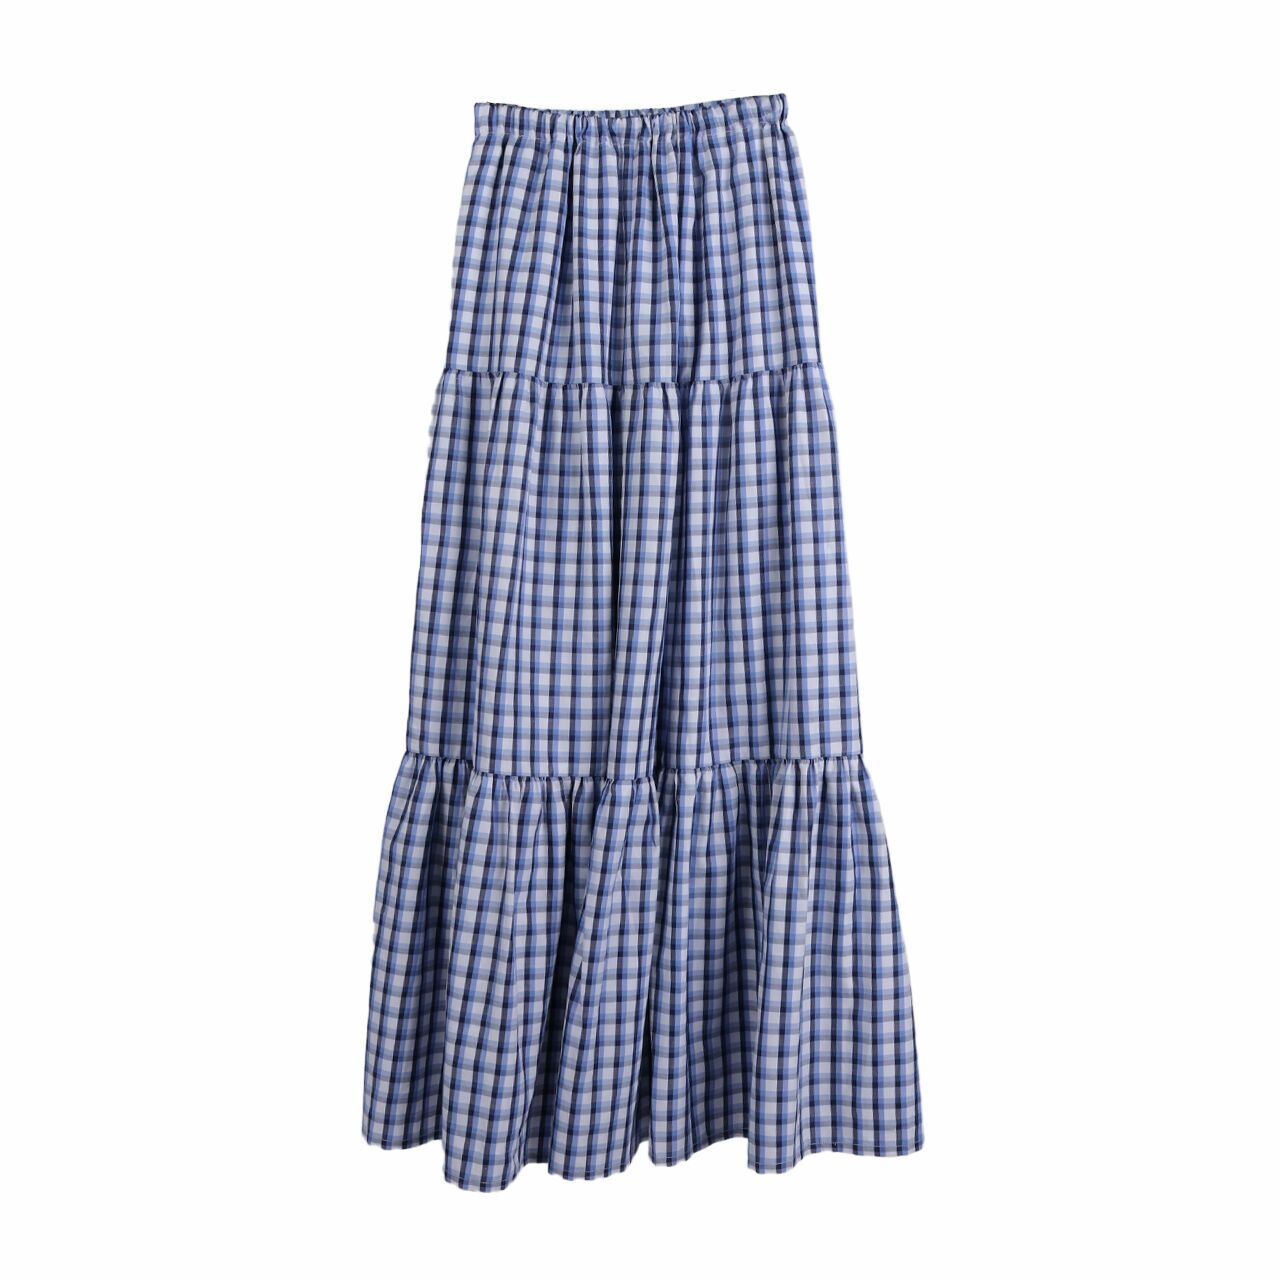 DUA AWAN Blue Tartan Maxi Skirt